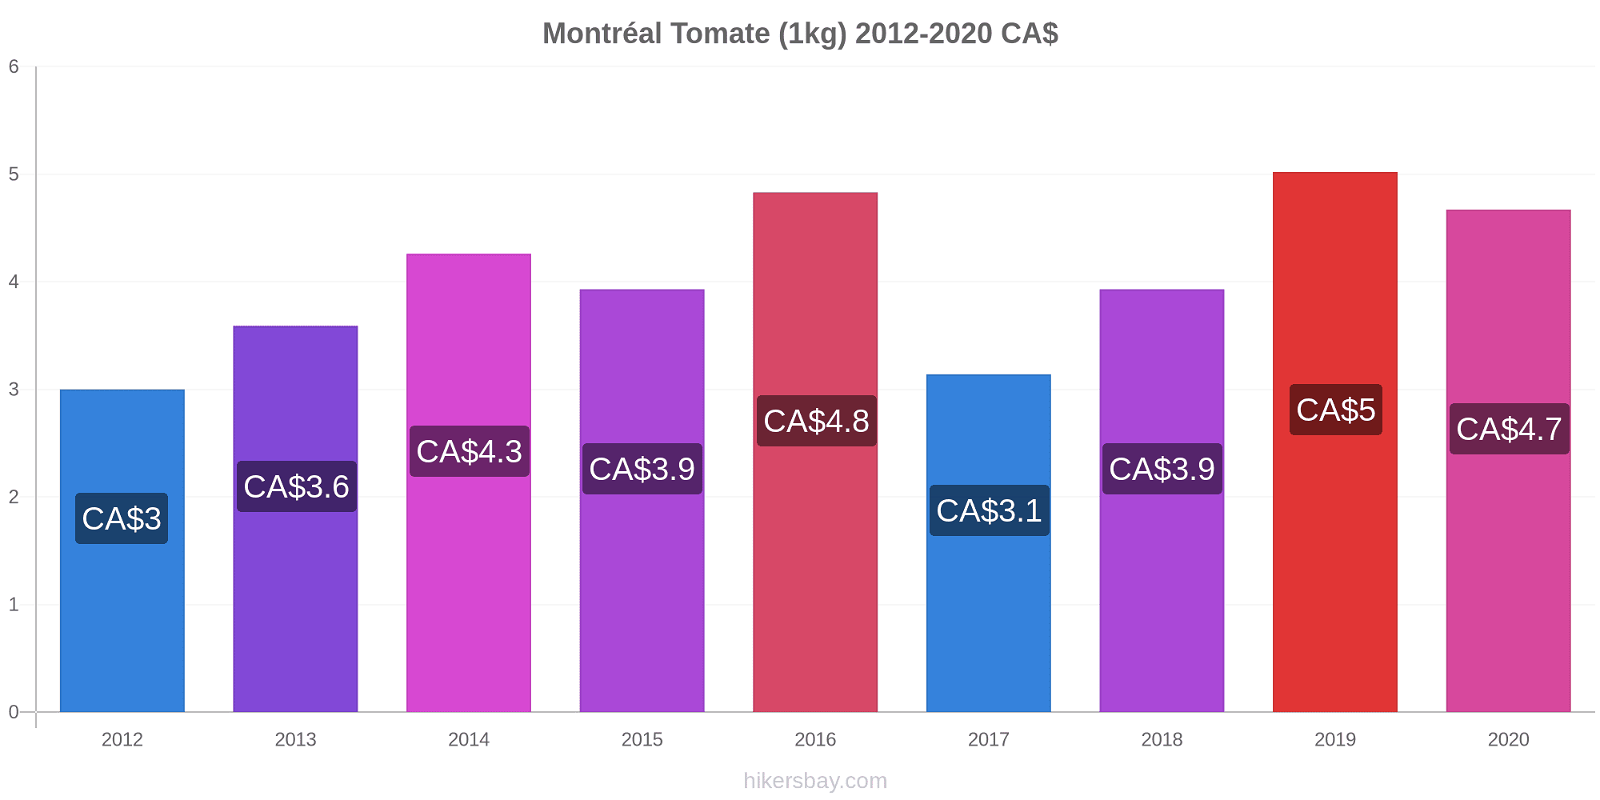 Montréal changements de prix Tomate (1kg) hikersbay.com